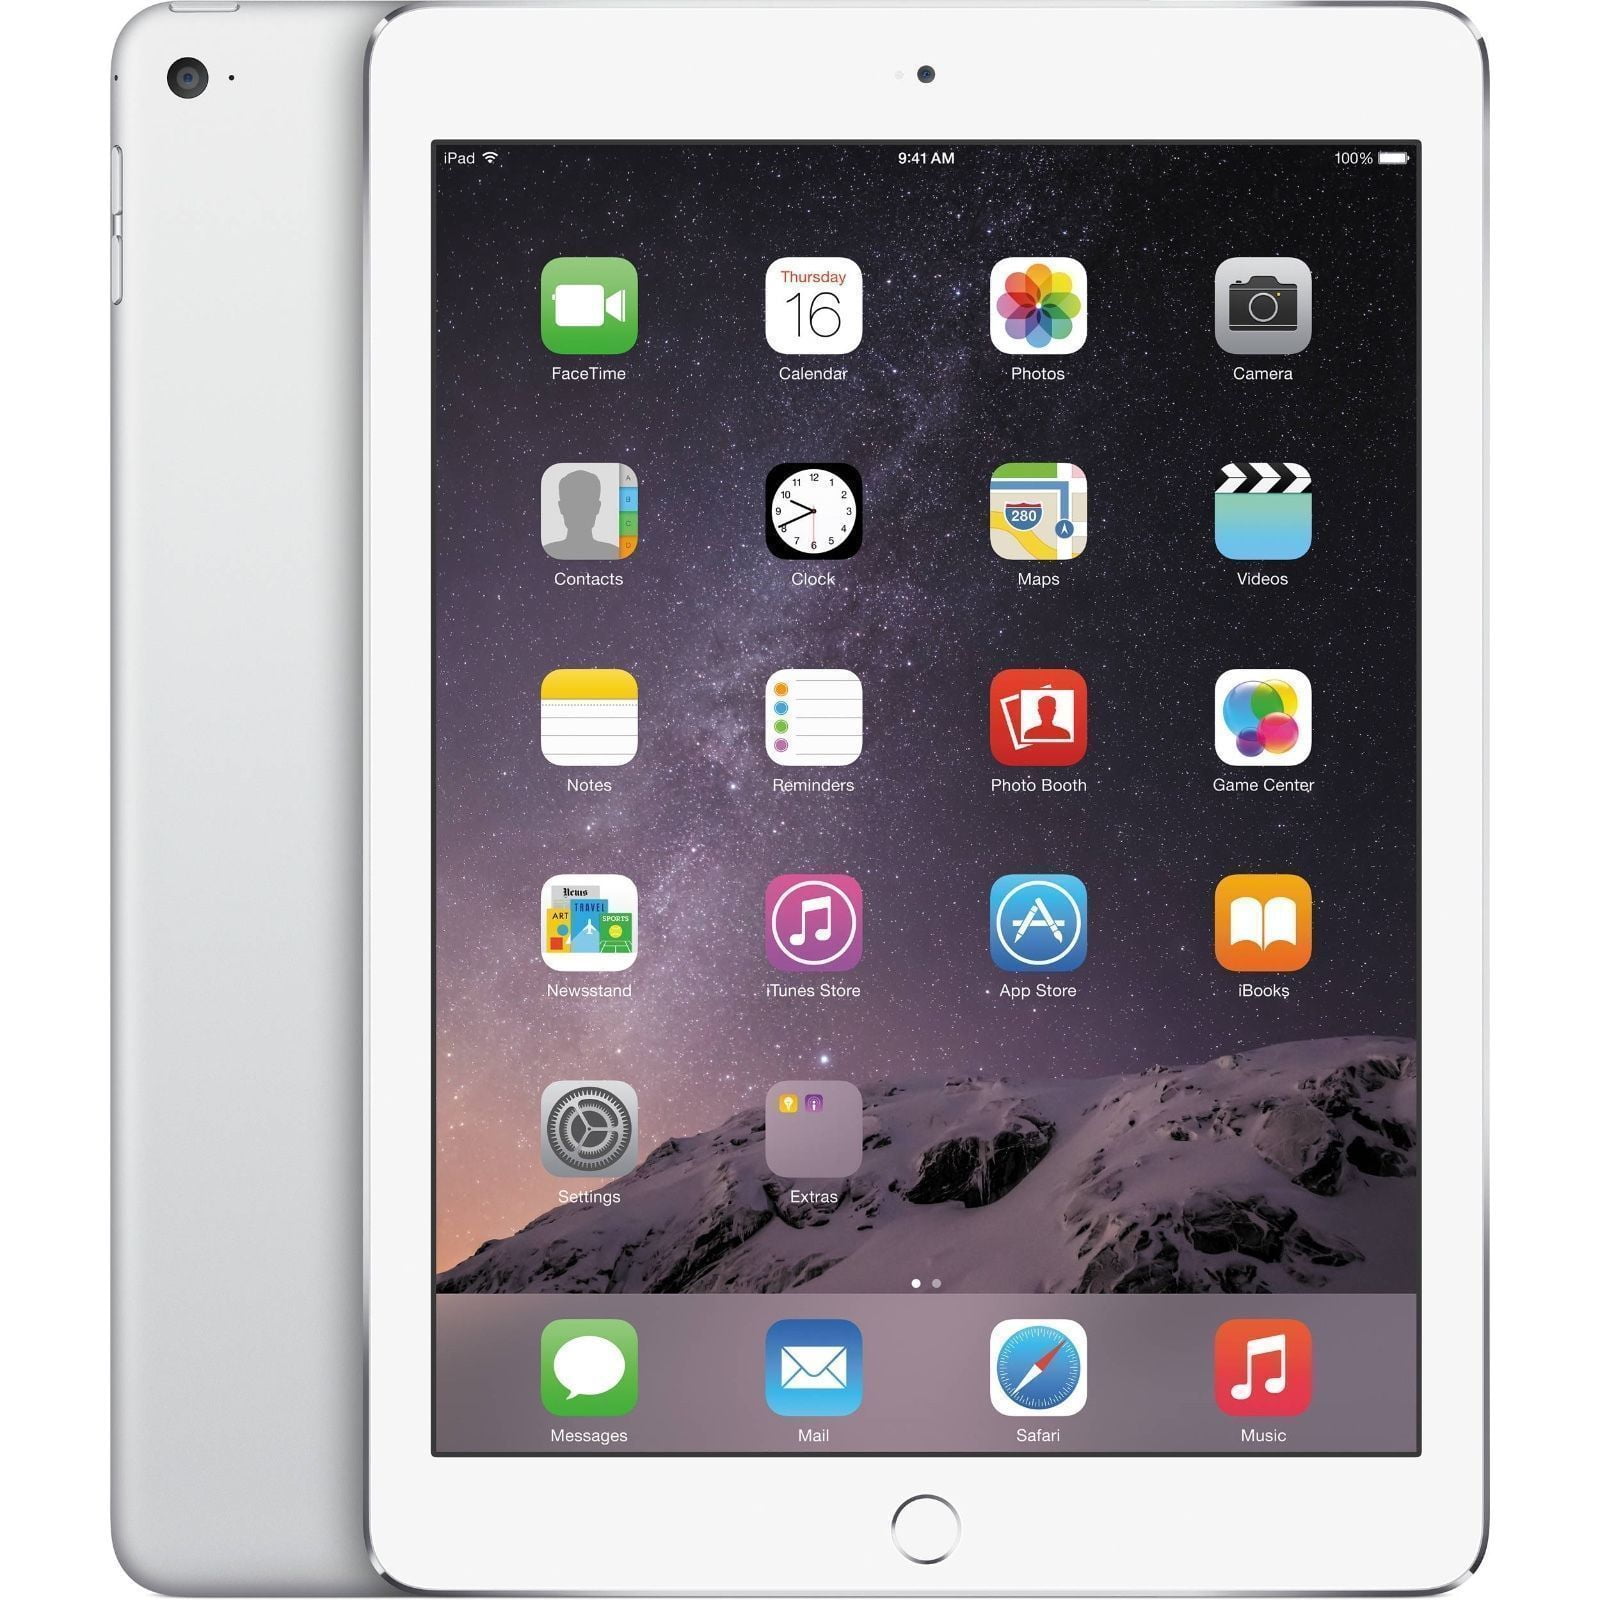 Apple iPad Mini 64GB With Wi-Fi, Black - Walmart.com